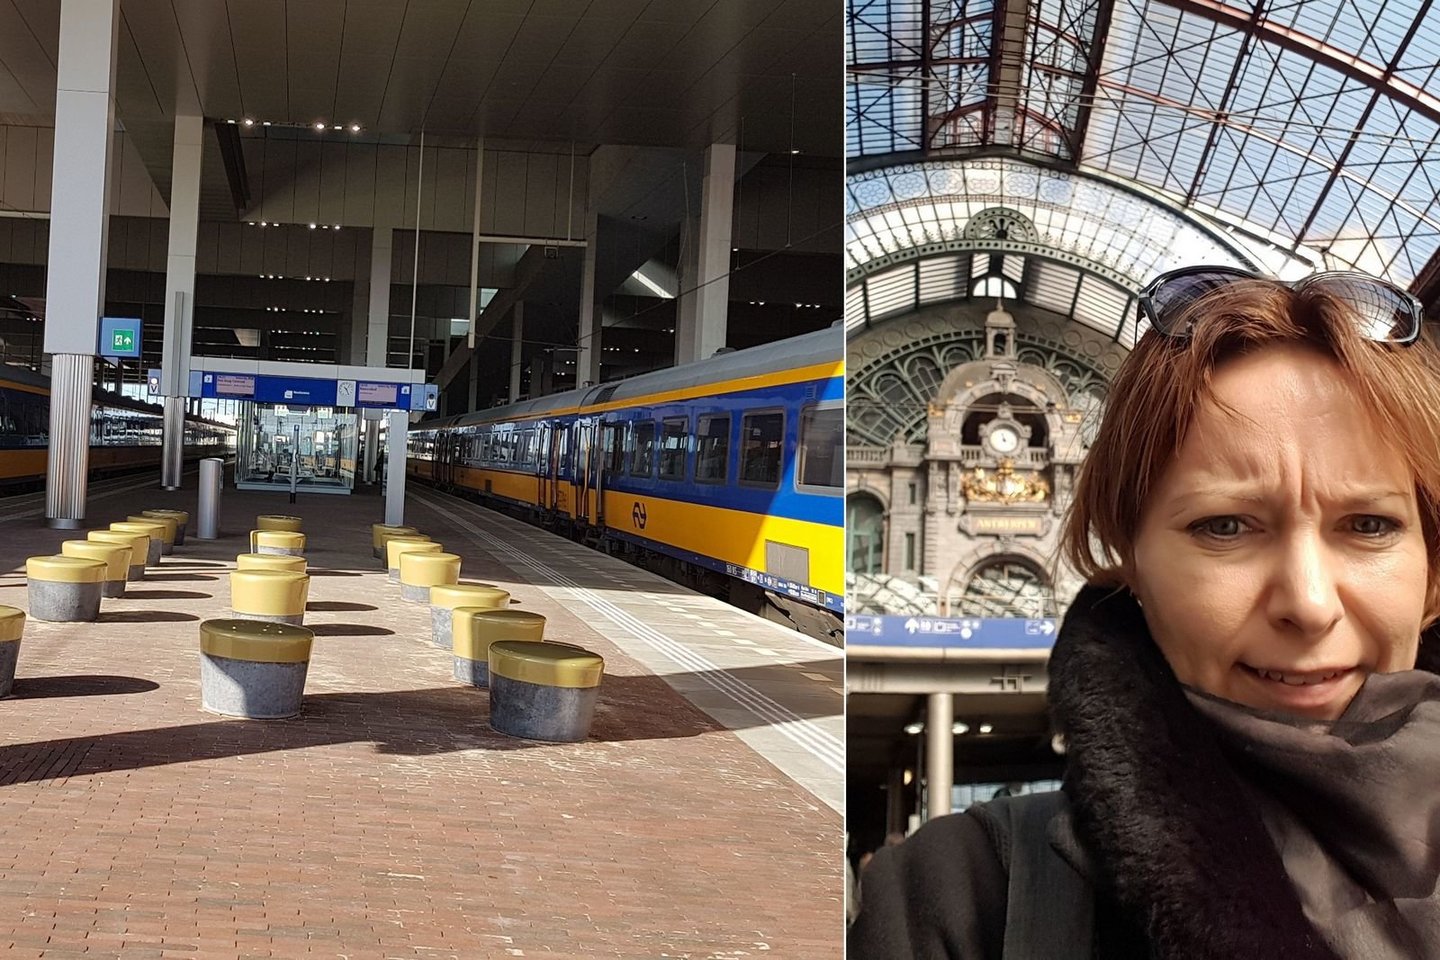  Asmenukė Antverpeno stotyje ir tuščias peronas.<br>J.Marcinkutės nuotr.